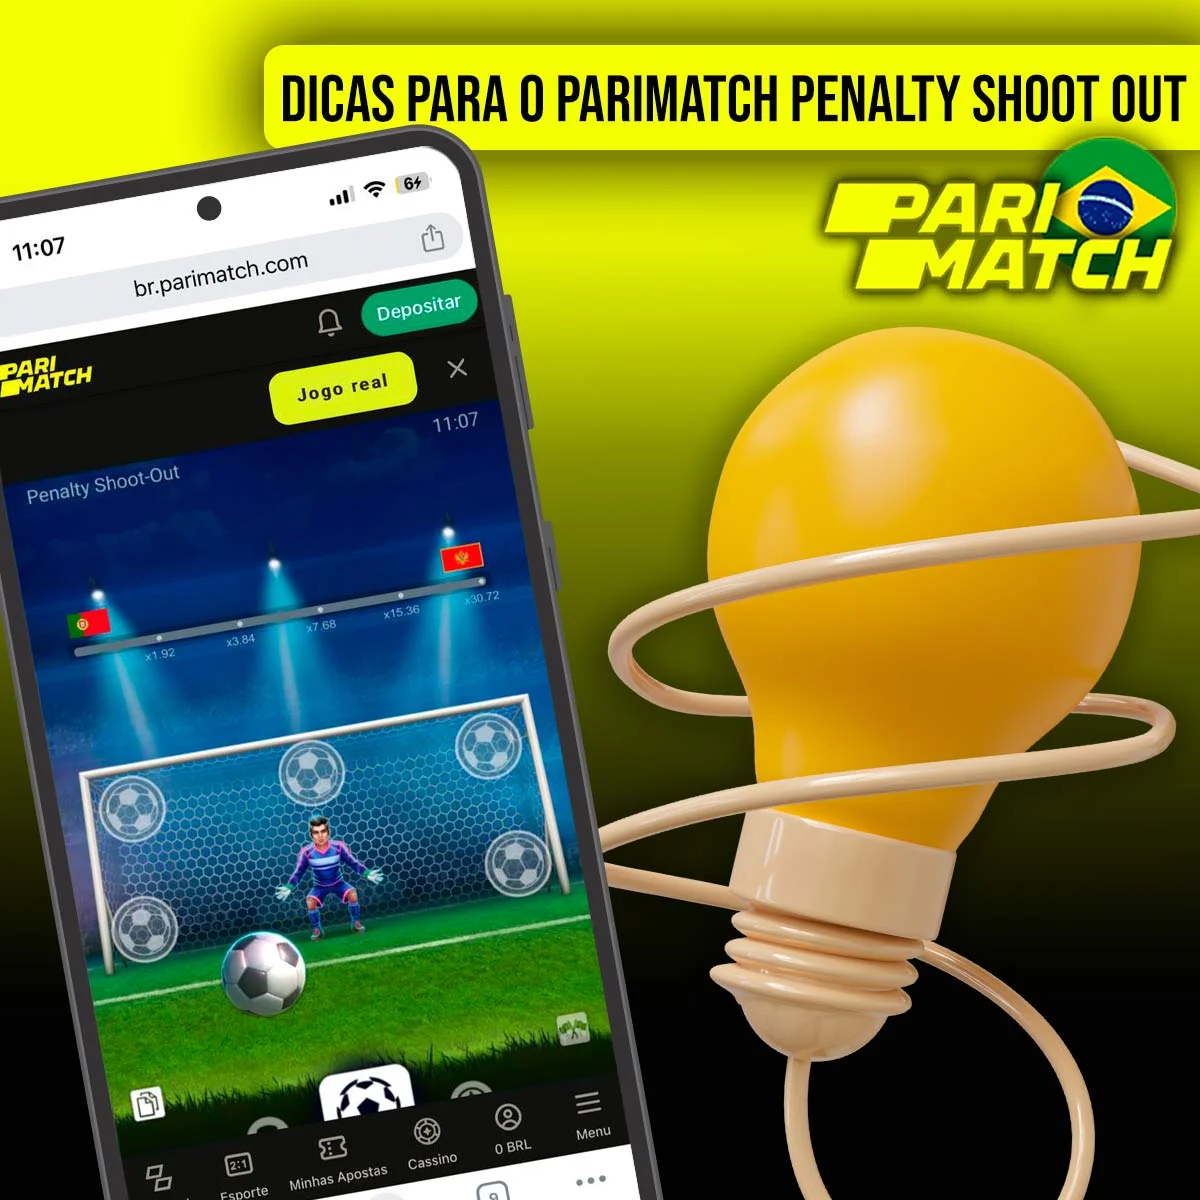 Recomendações para jogar Penalty Shoot Out no Parimatch